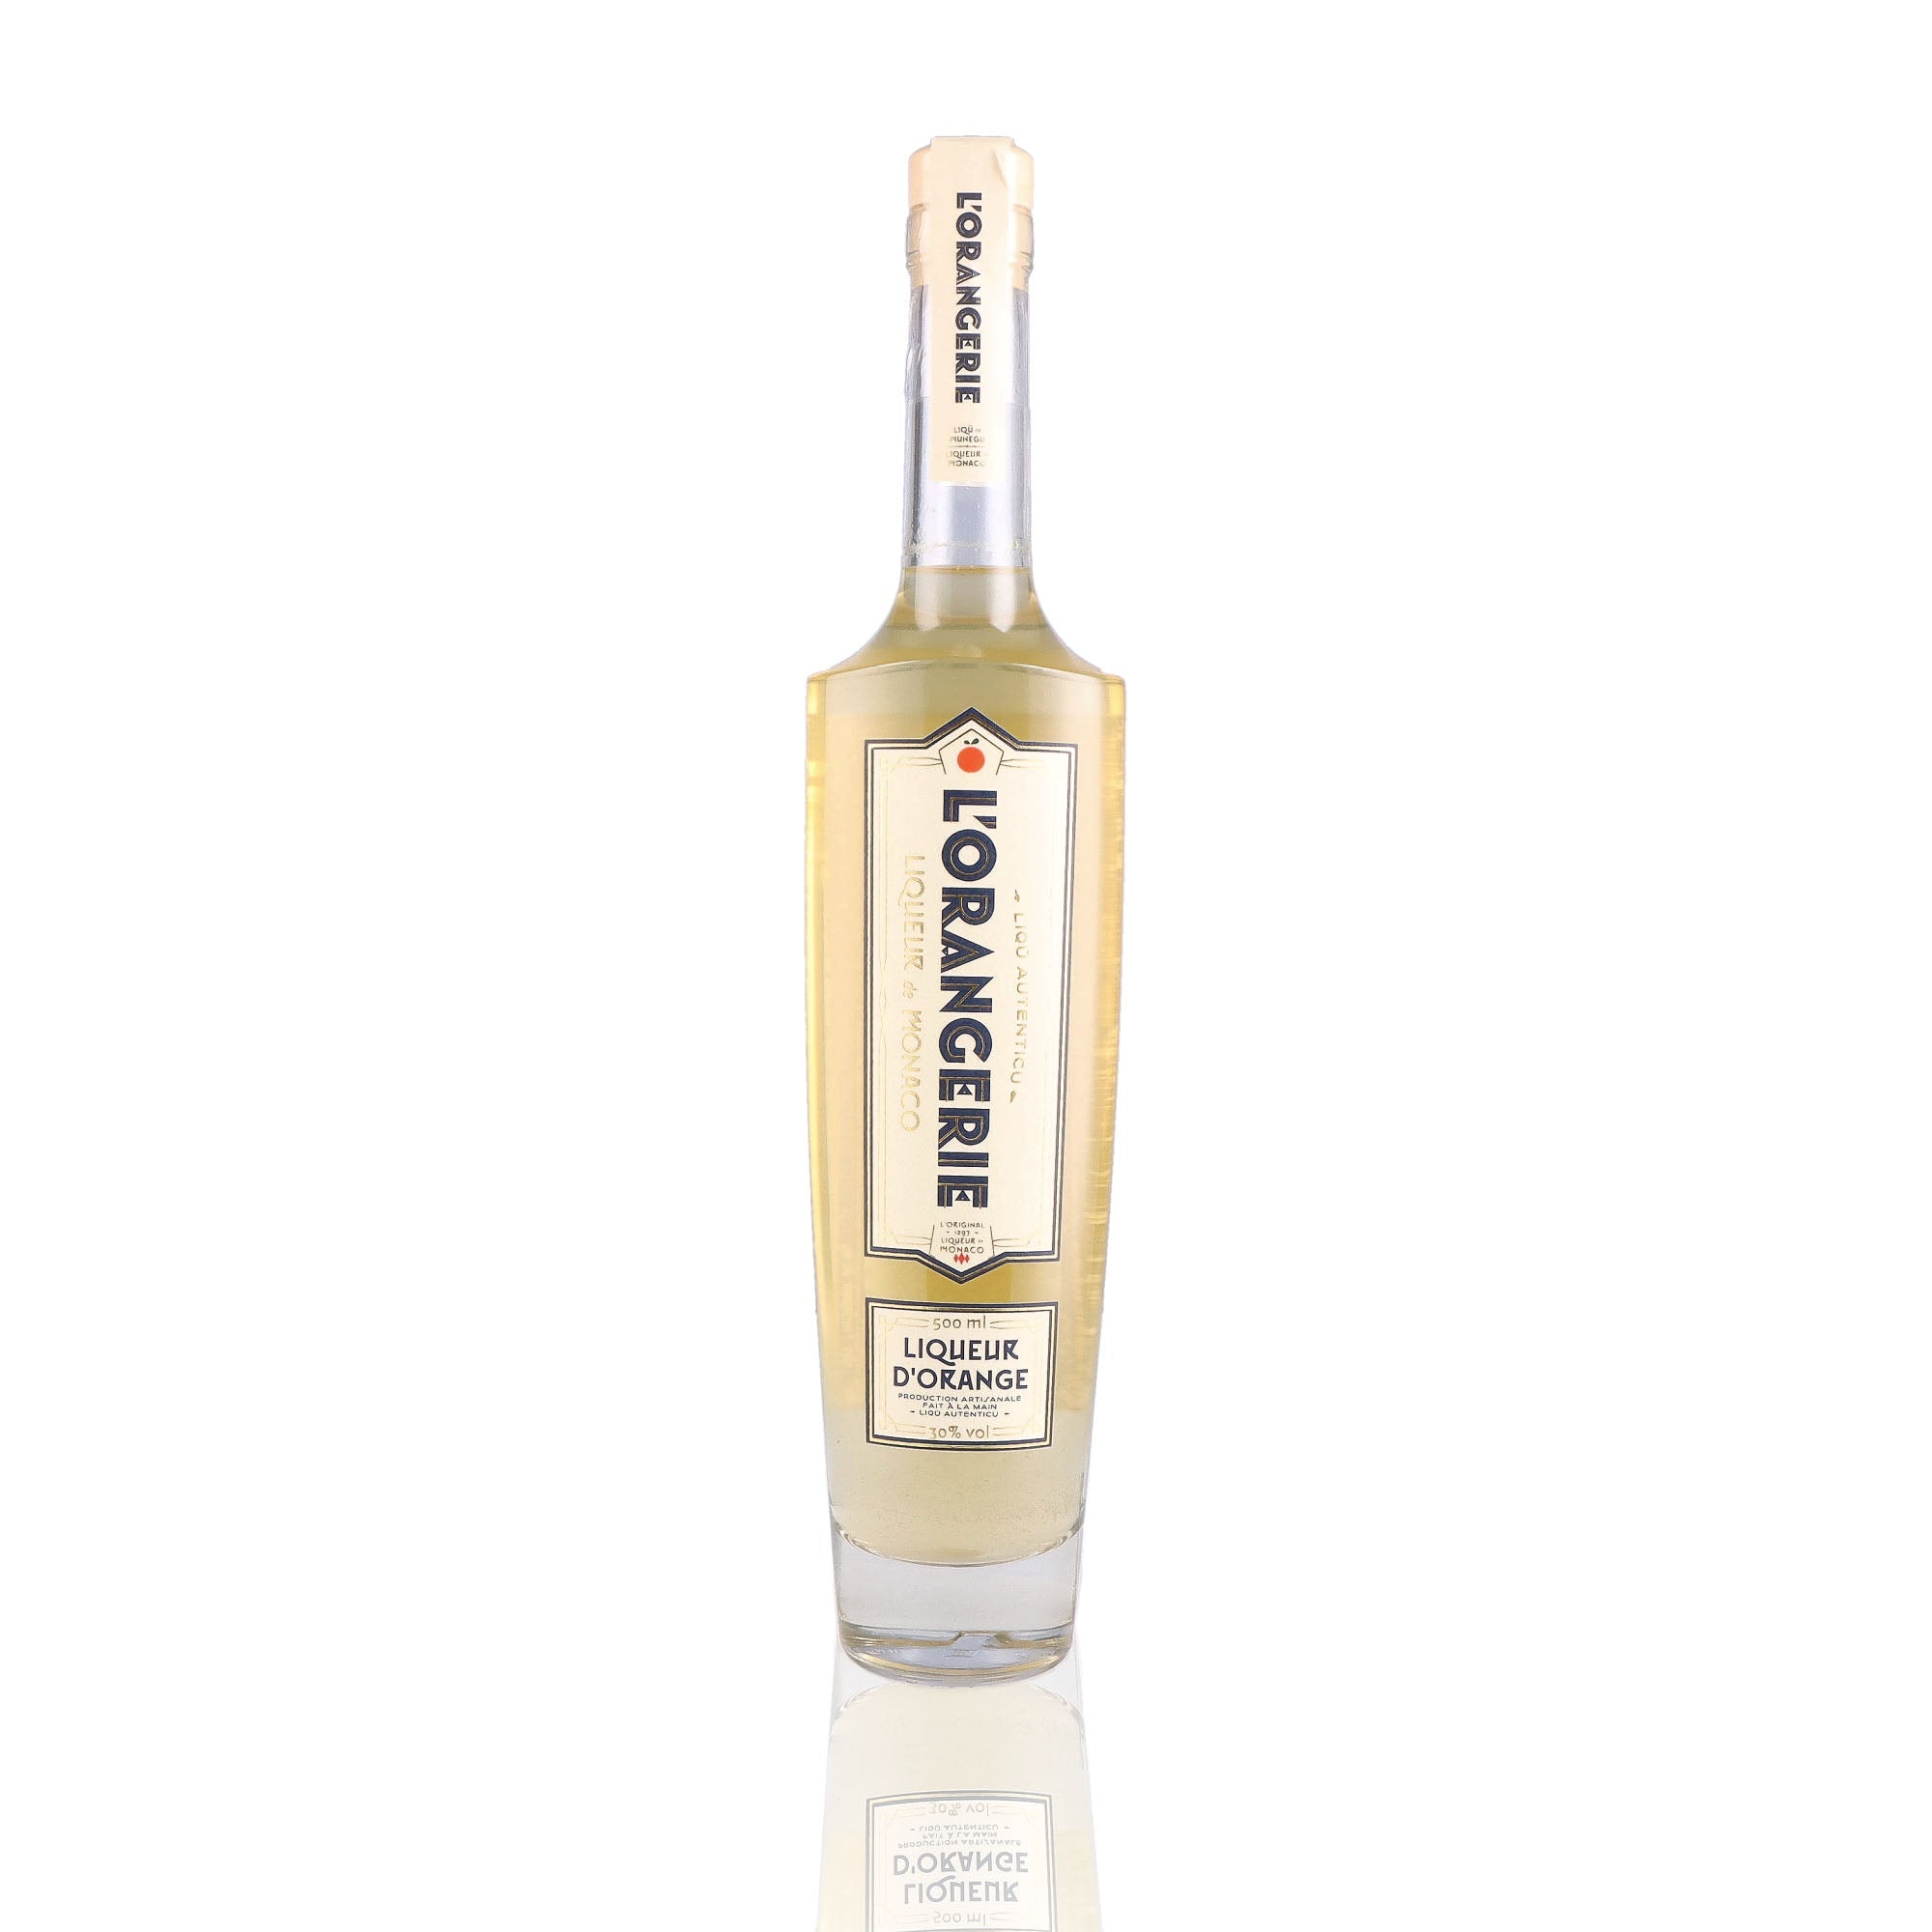 Une bouteille de Liqueur, de la marque Monaco, nommée L'Orangerie.